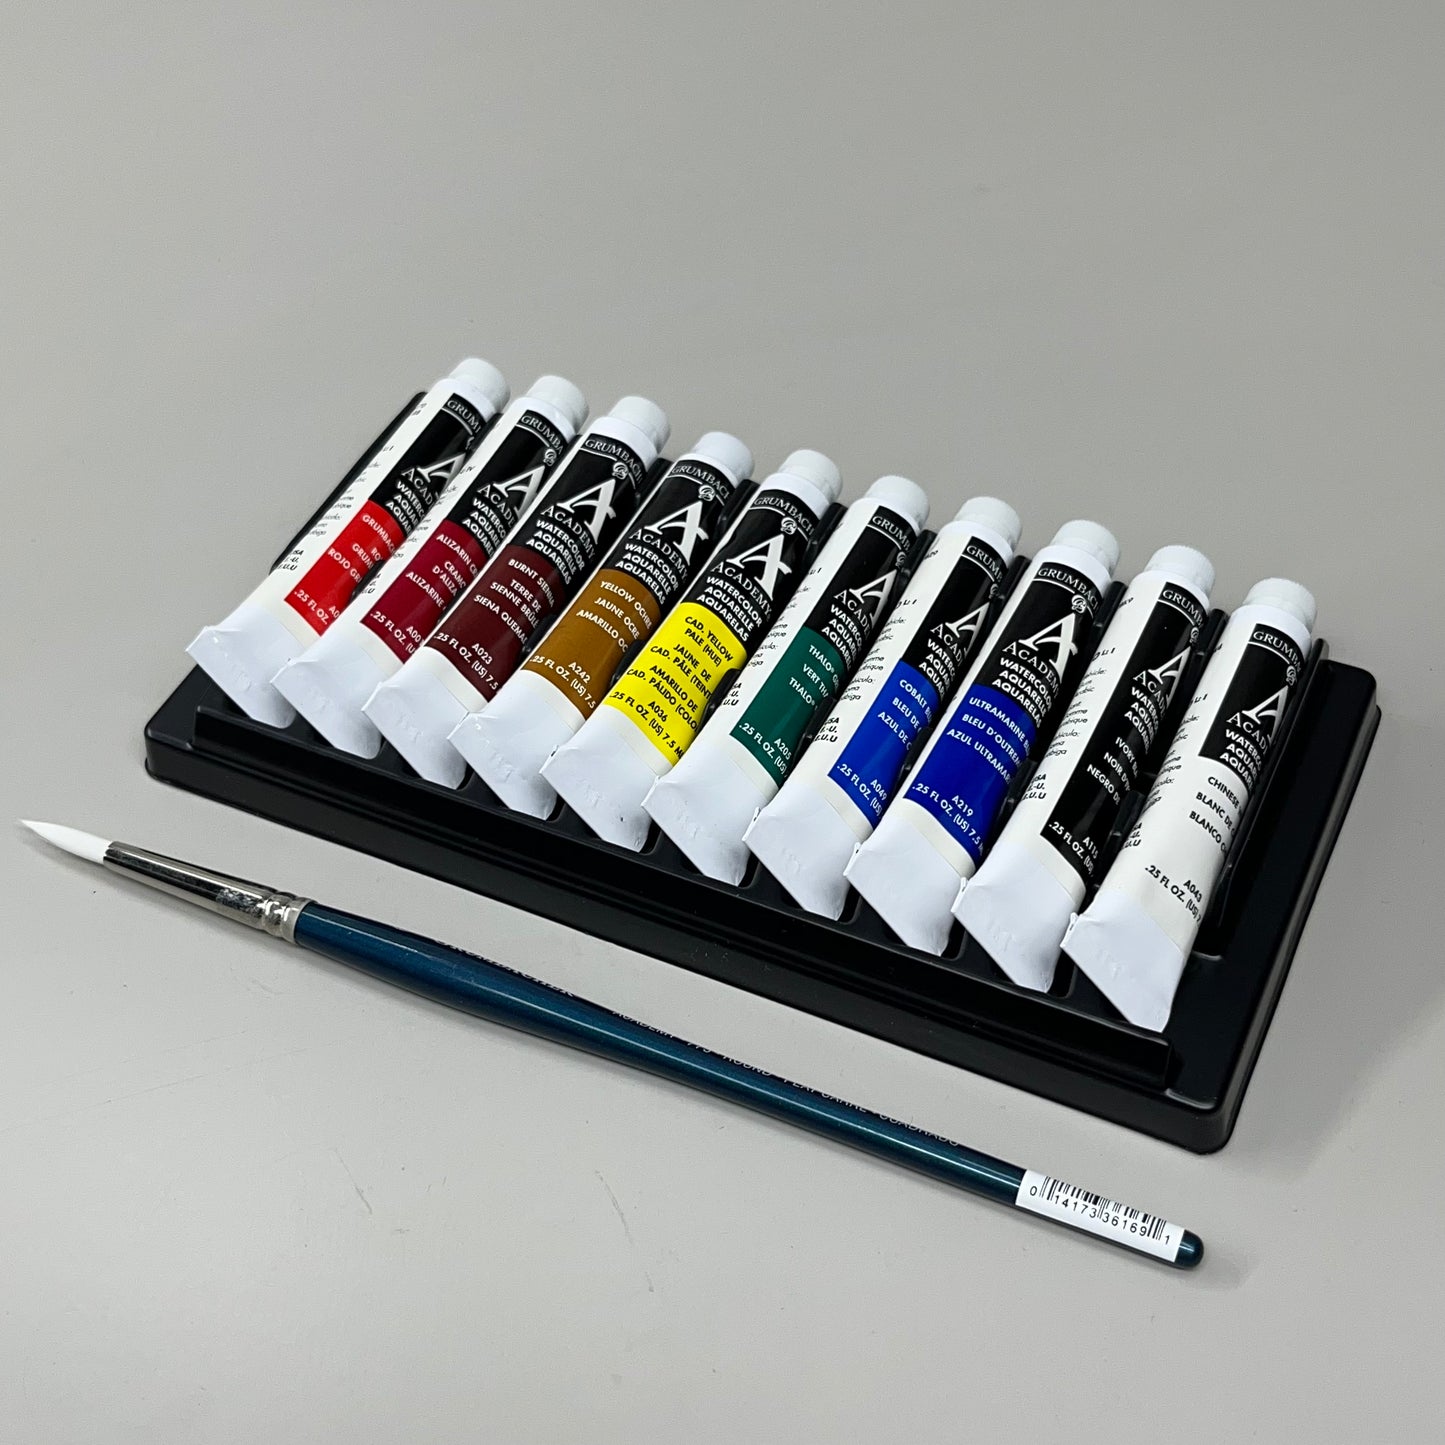 GRUMBACHER Academy Watercolor Paint 10-Color Set w/ Palette, & Brush Sz 7.5 ml / .25 fl oz 2010 (New)